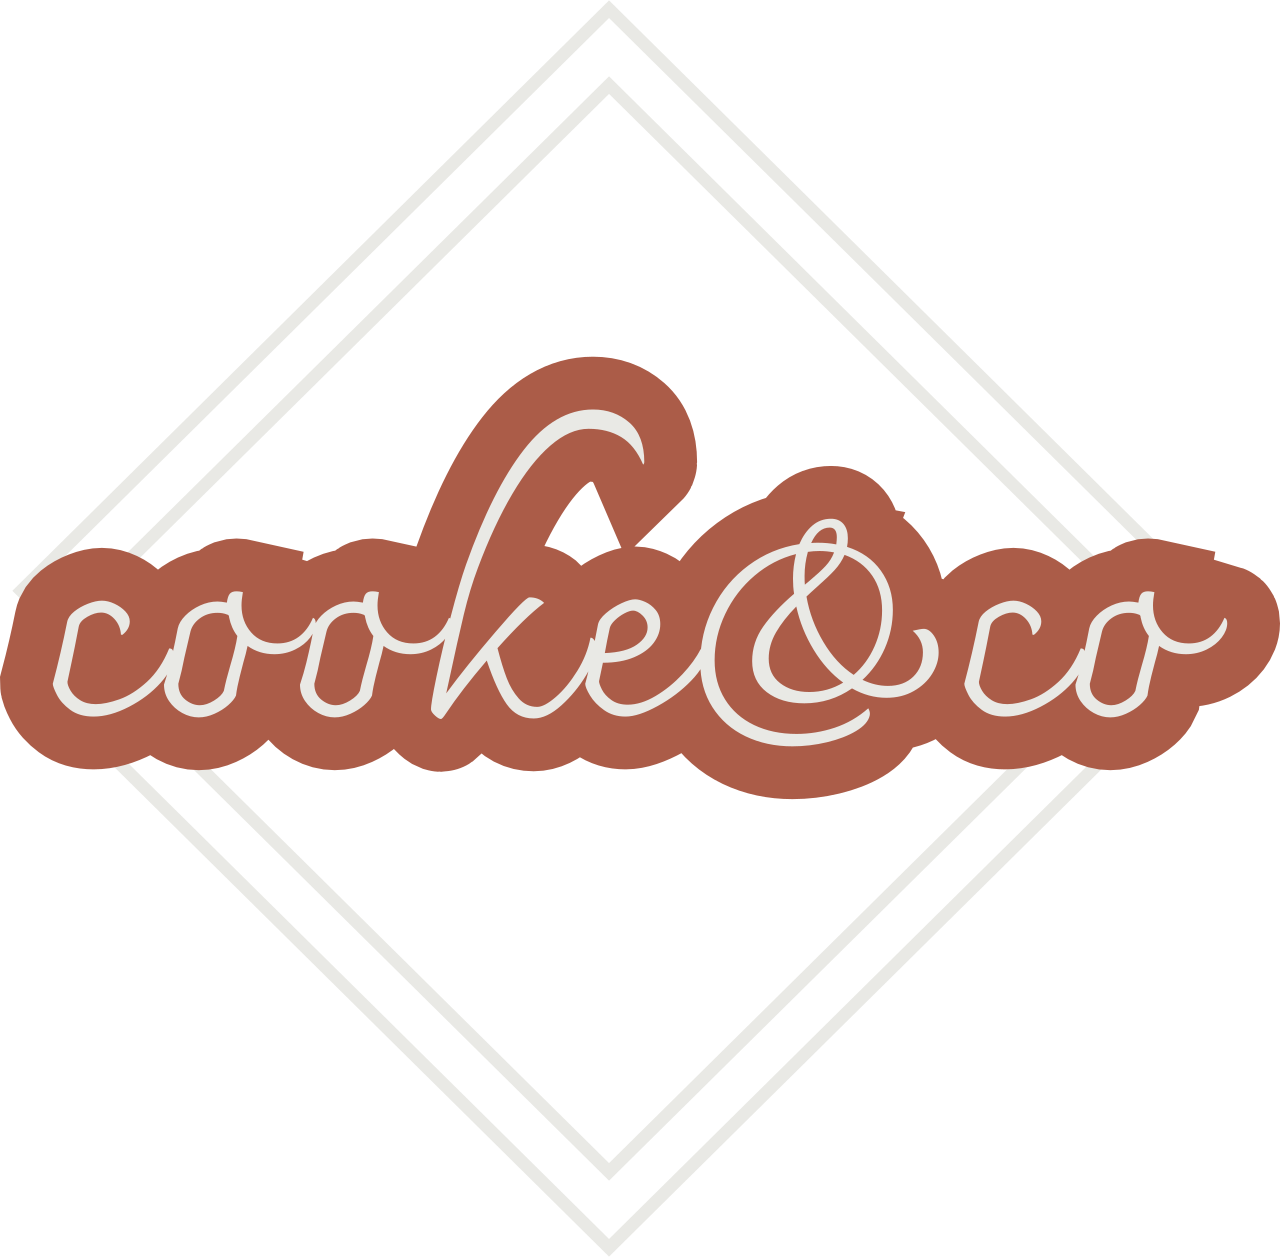 cooke&co's logo